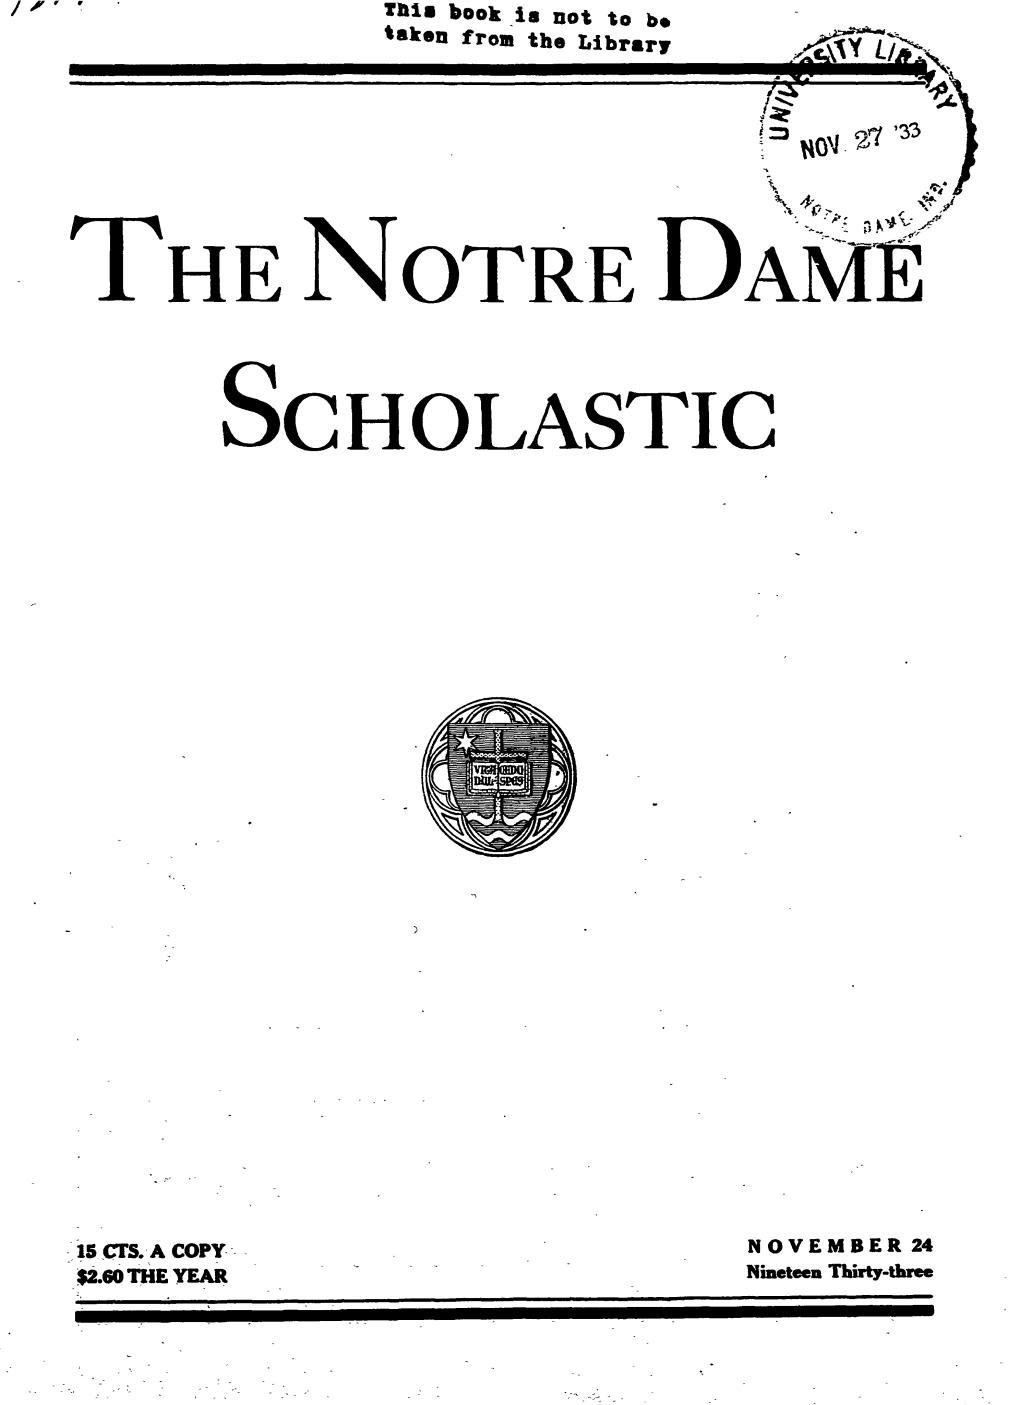 Notre Dame Scholastic, Vol. 67, No. 09